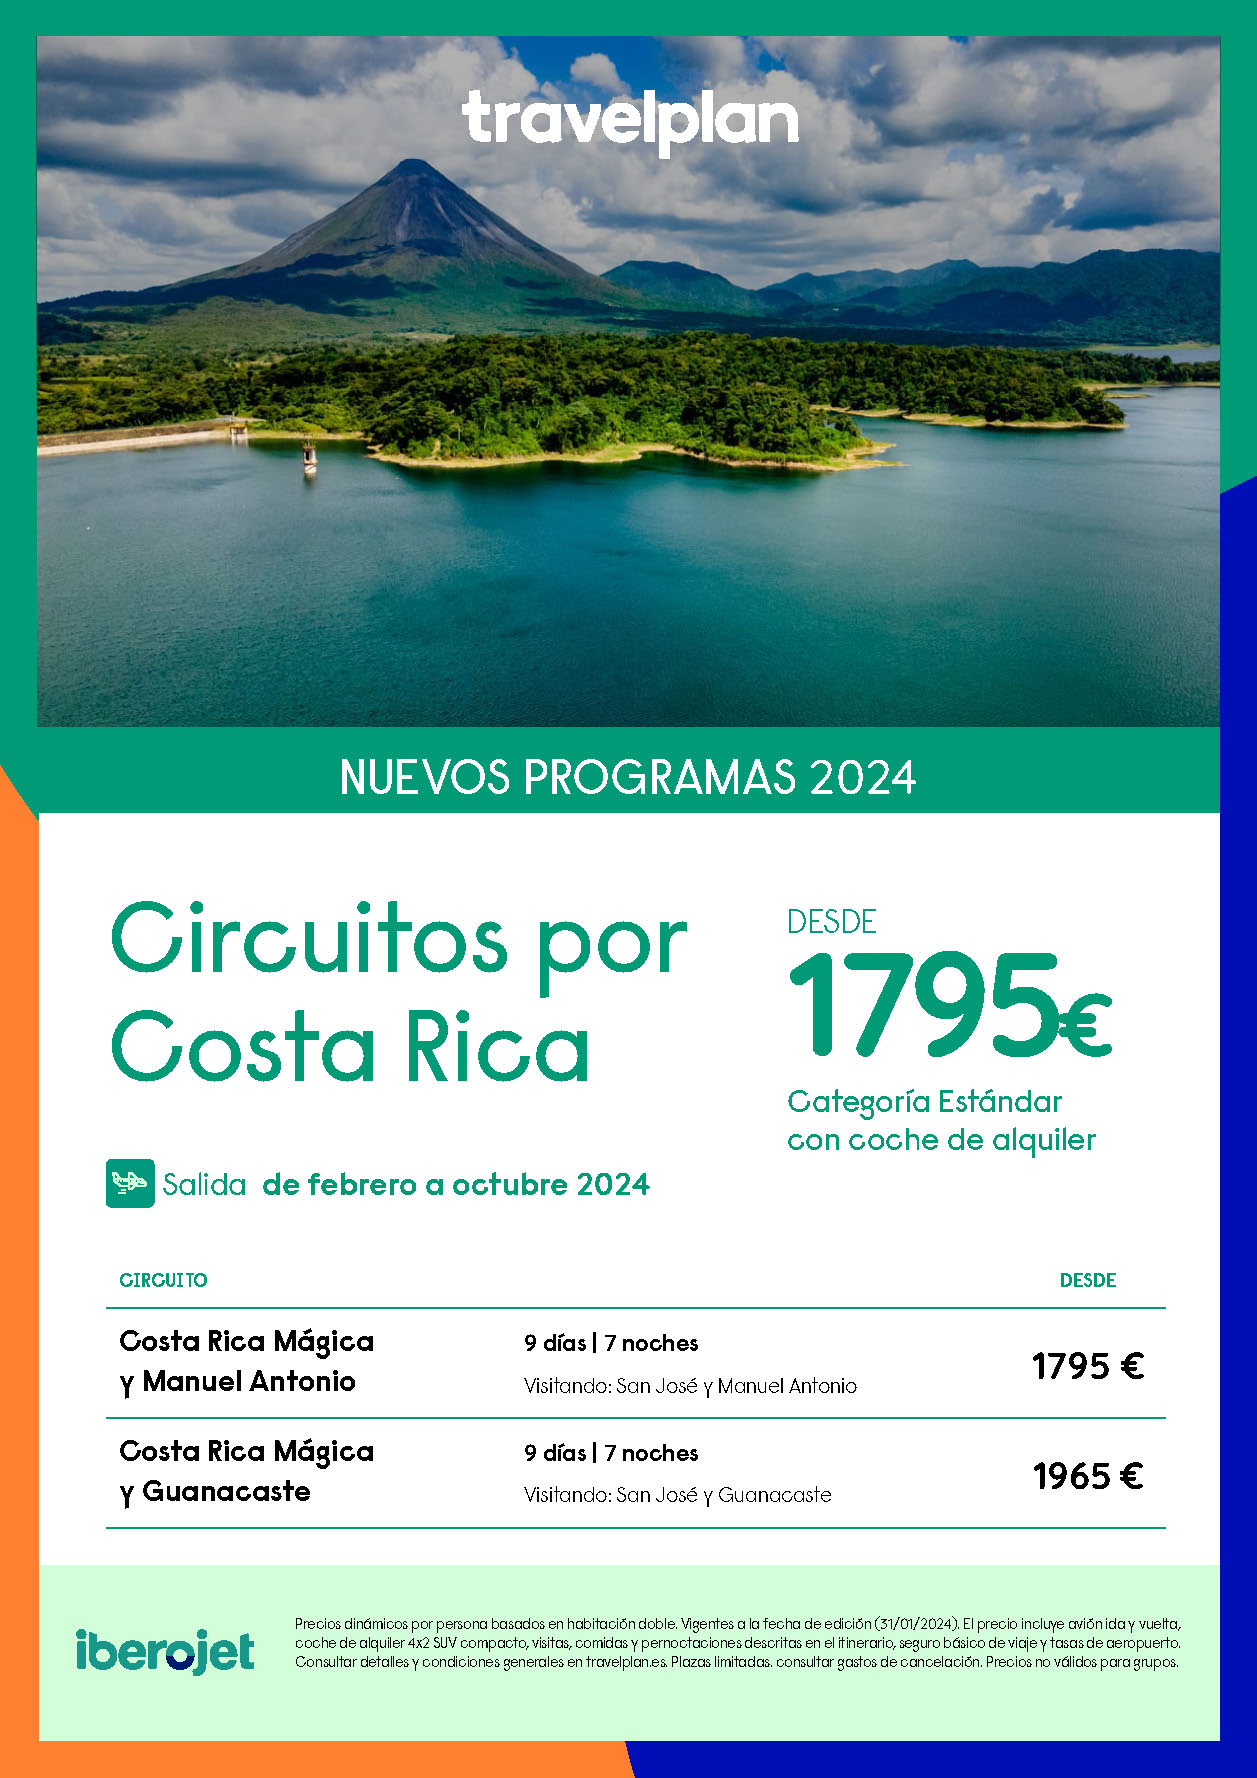 Oferta Travelplan 2024 Circuito Costa Rica Magica y Manuel Antonio o Guanacaste Fly and Drive 9 dias salida en vuelo directo desde Madrid